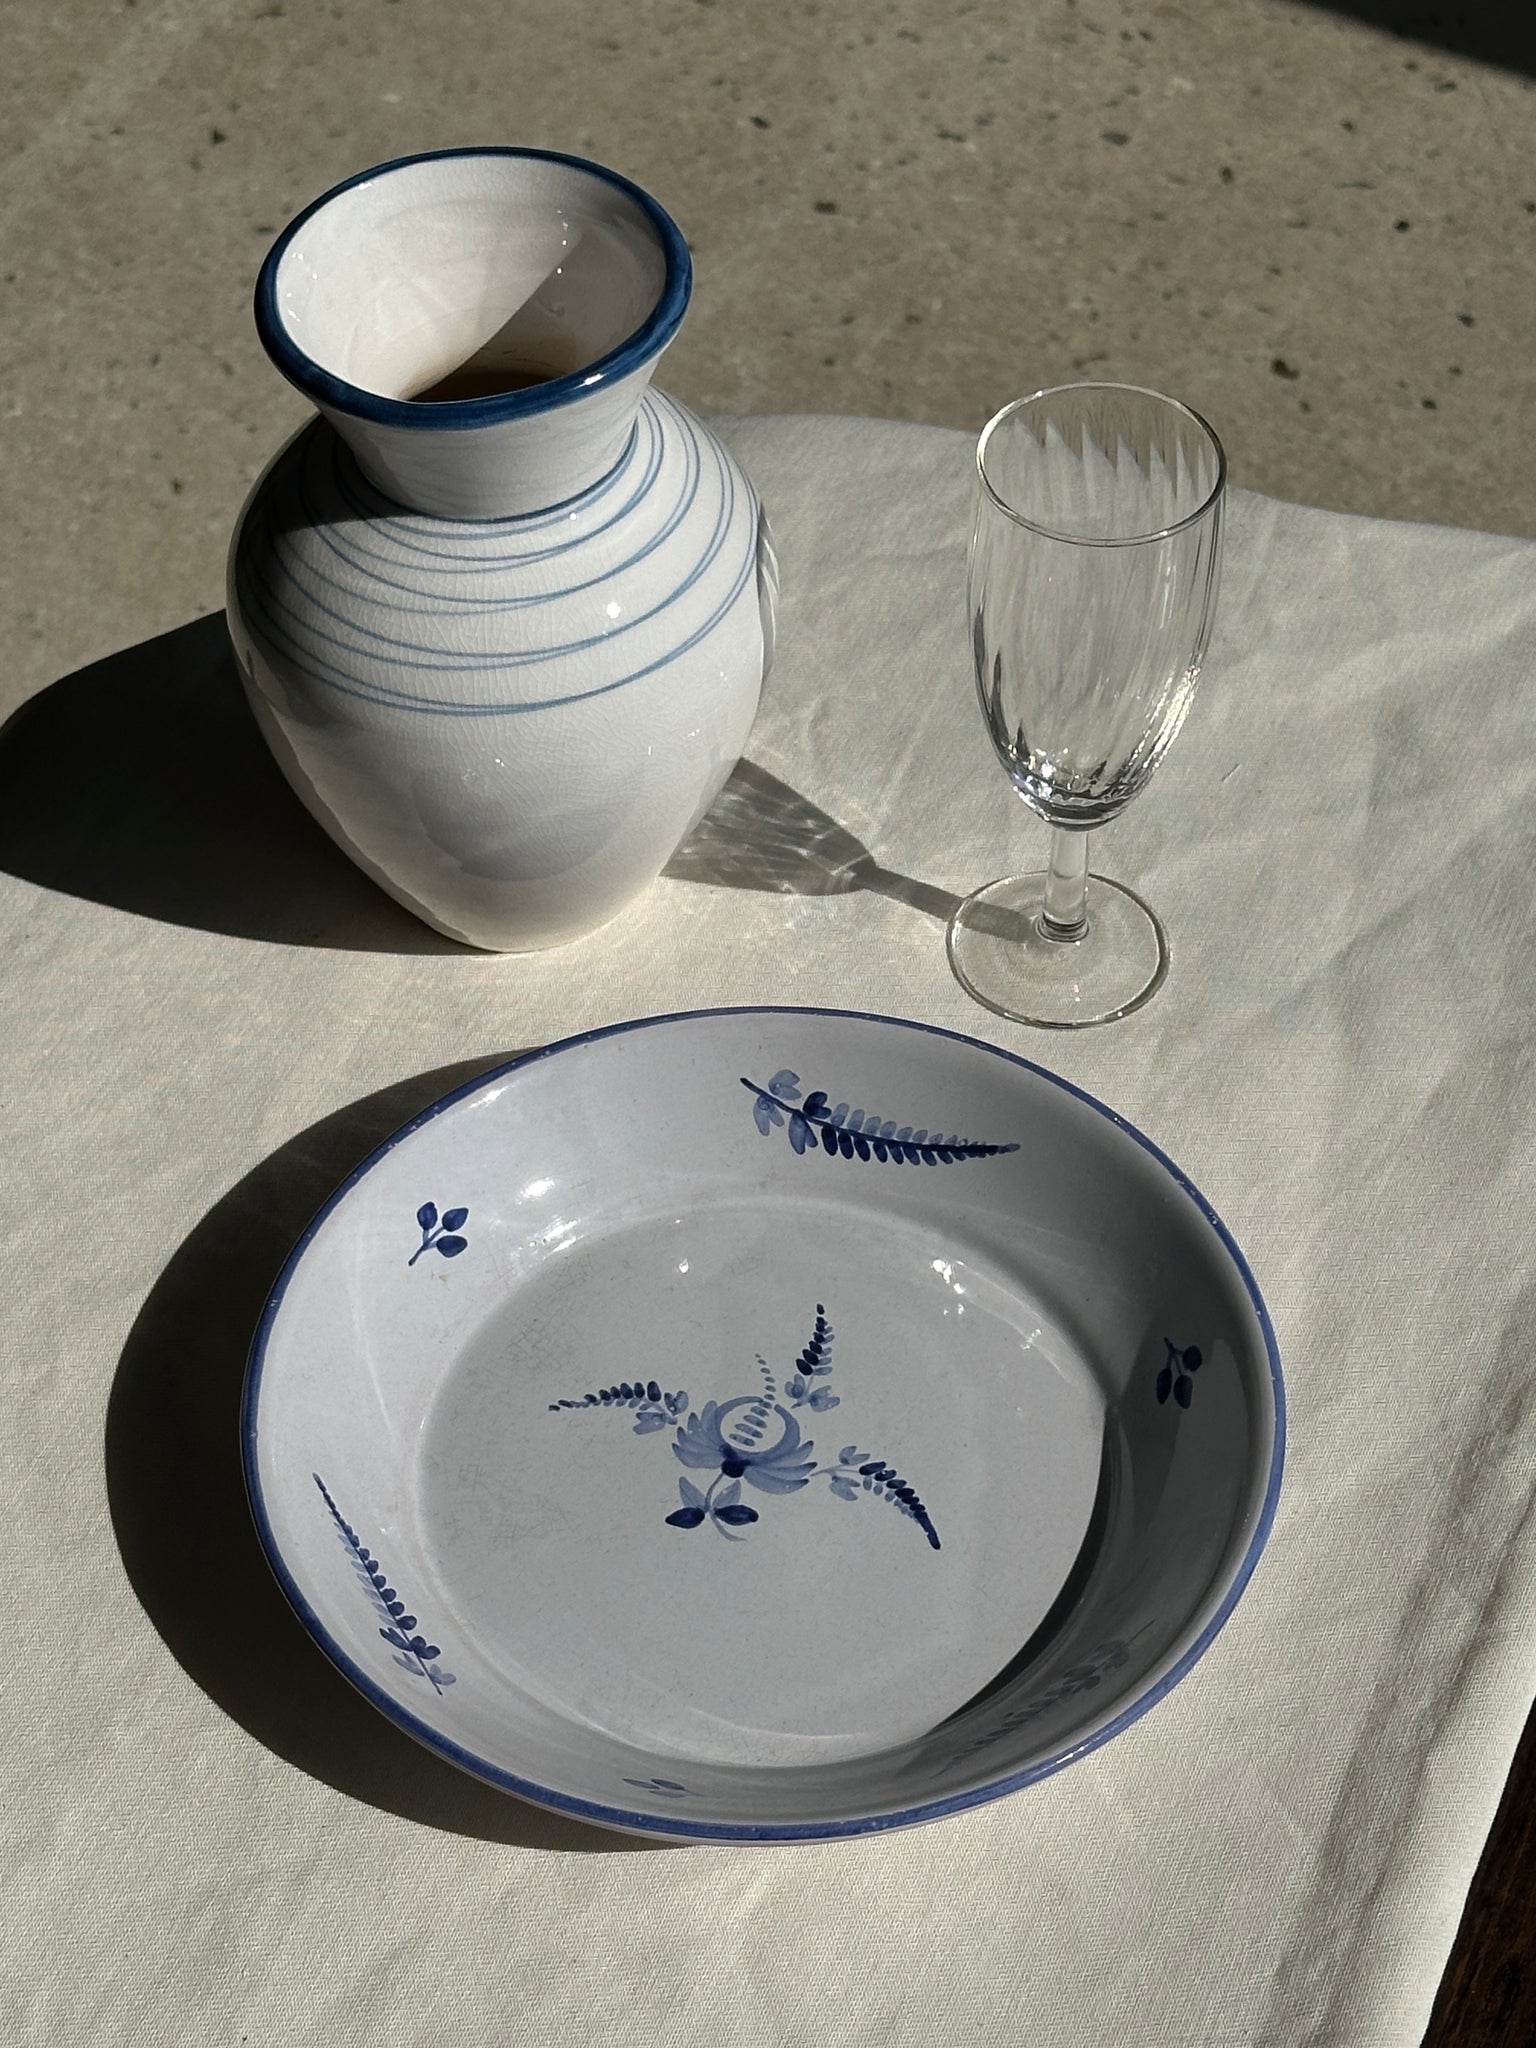 Petit vase blanc et bleu à motifs de cercles bleus